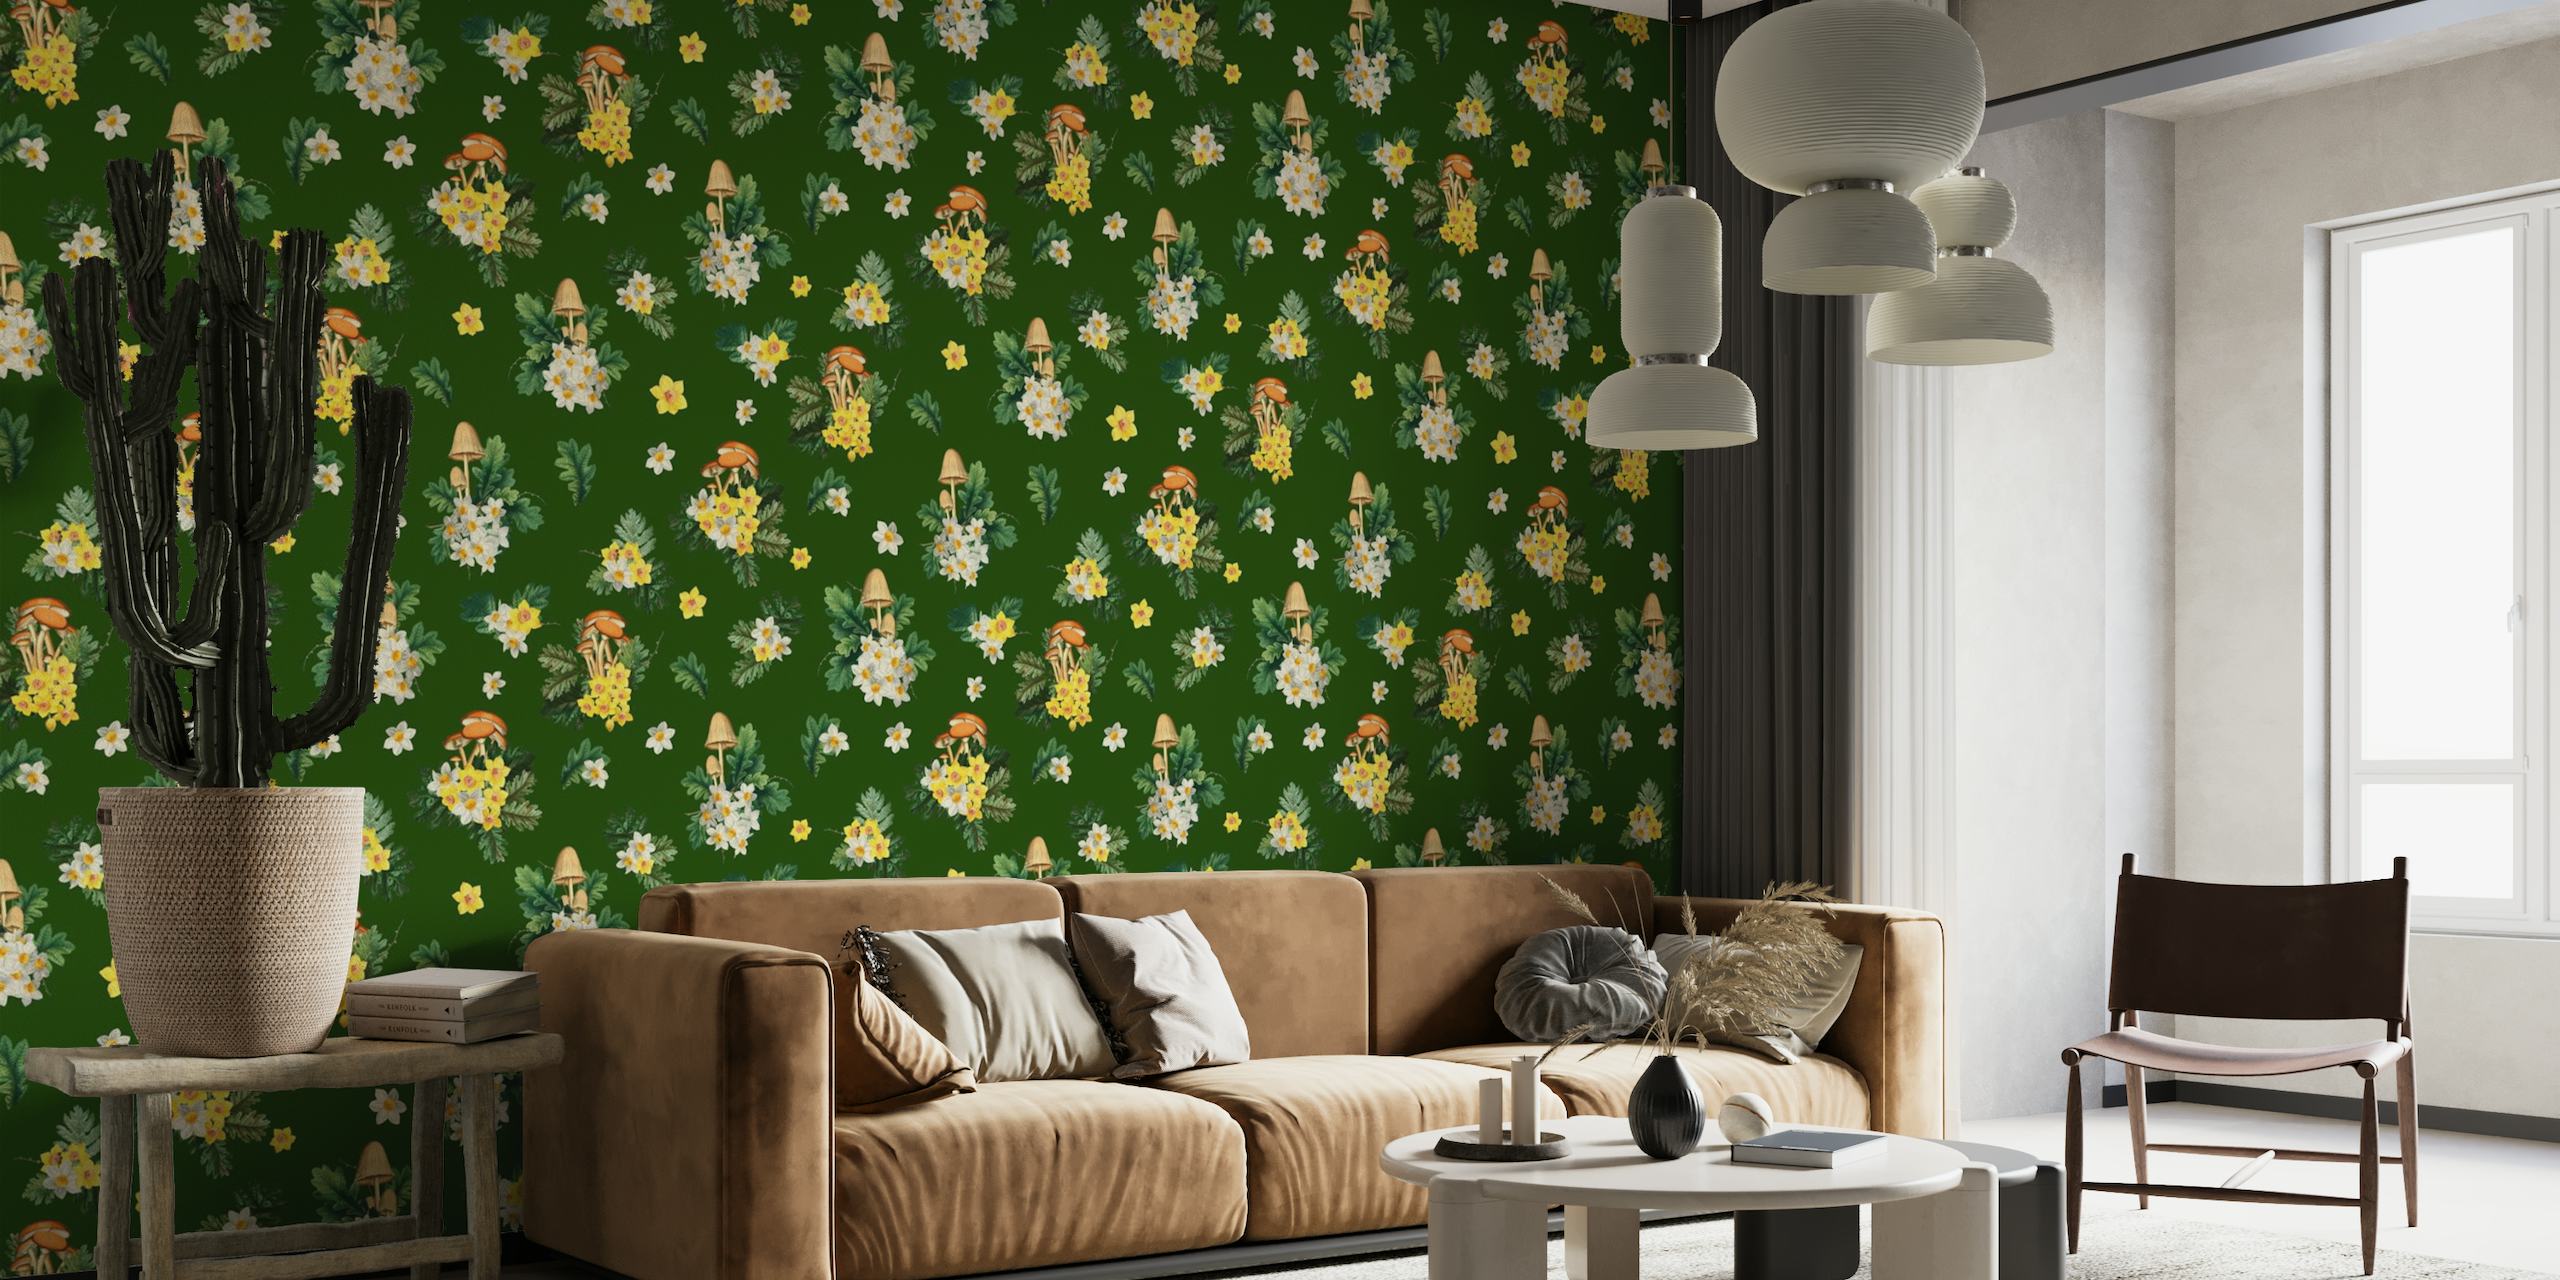 Illustratives Wandbild mit Pilzen und Wildblumen auf grünem Hintergrund, perfekt für einen Raum mit Naturthema.